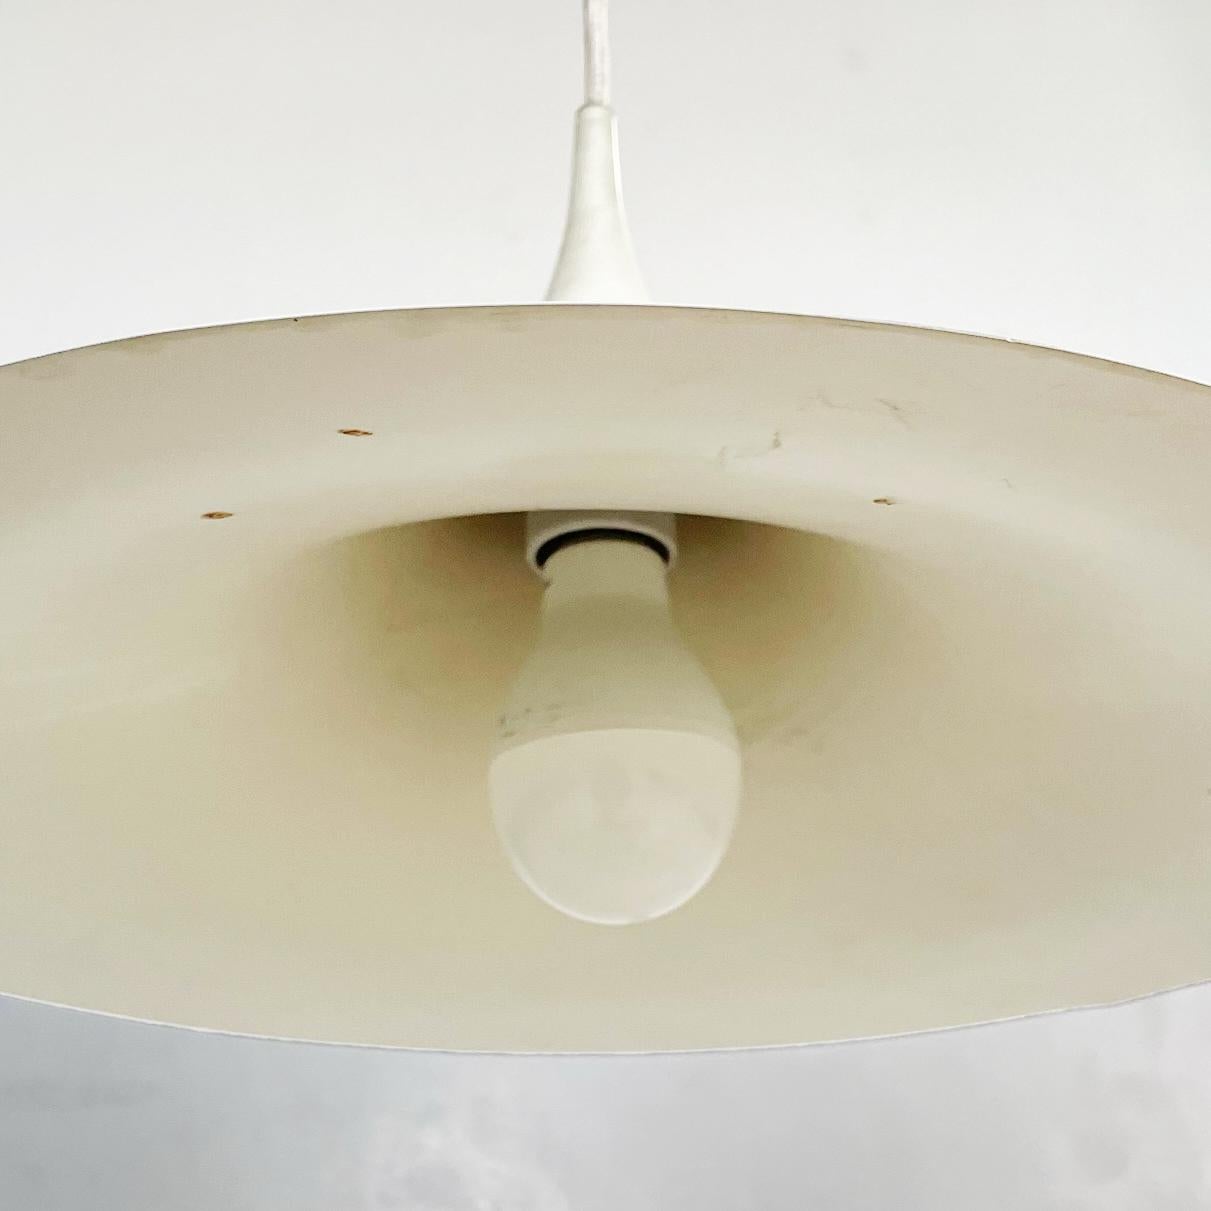 Italian Modern Ceiling Lamp Semi by Bonderup & Thorup for Fog & Mørup, 1970s For Sale 4